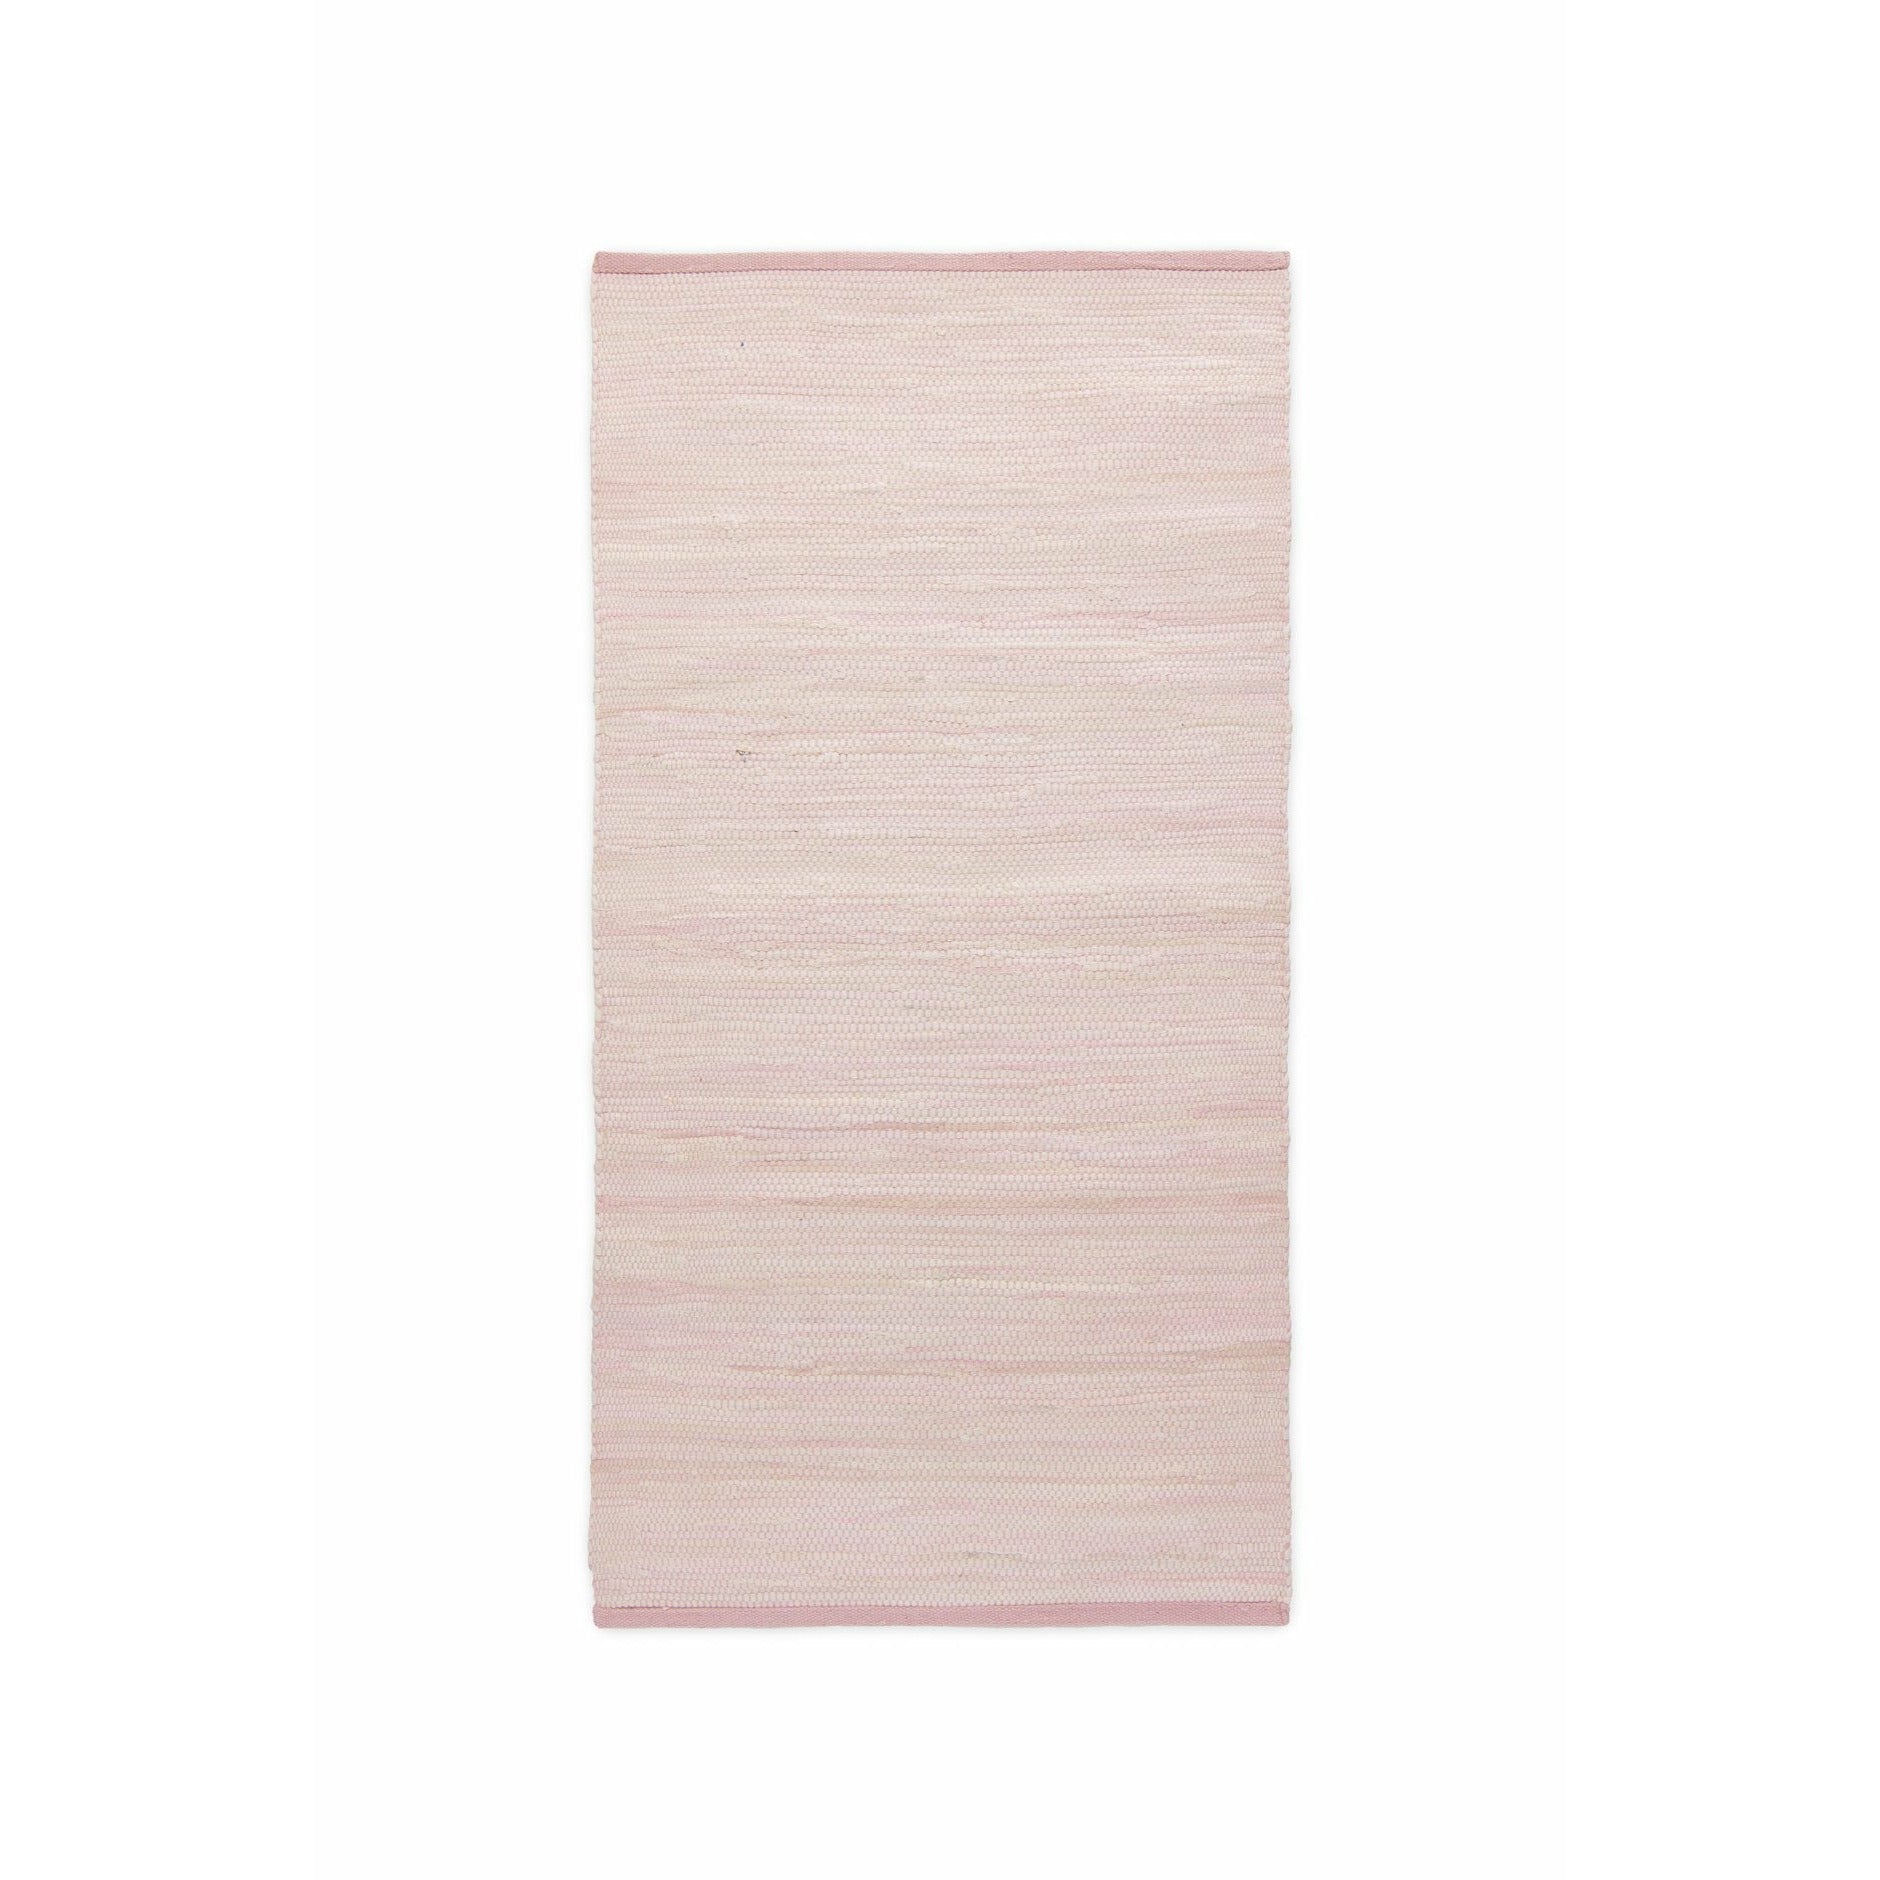 Koberec pevný bavlněný koberec Misty Rose, 75 x 200 cm